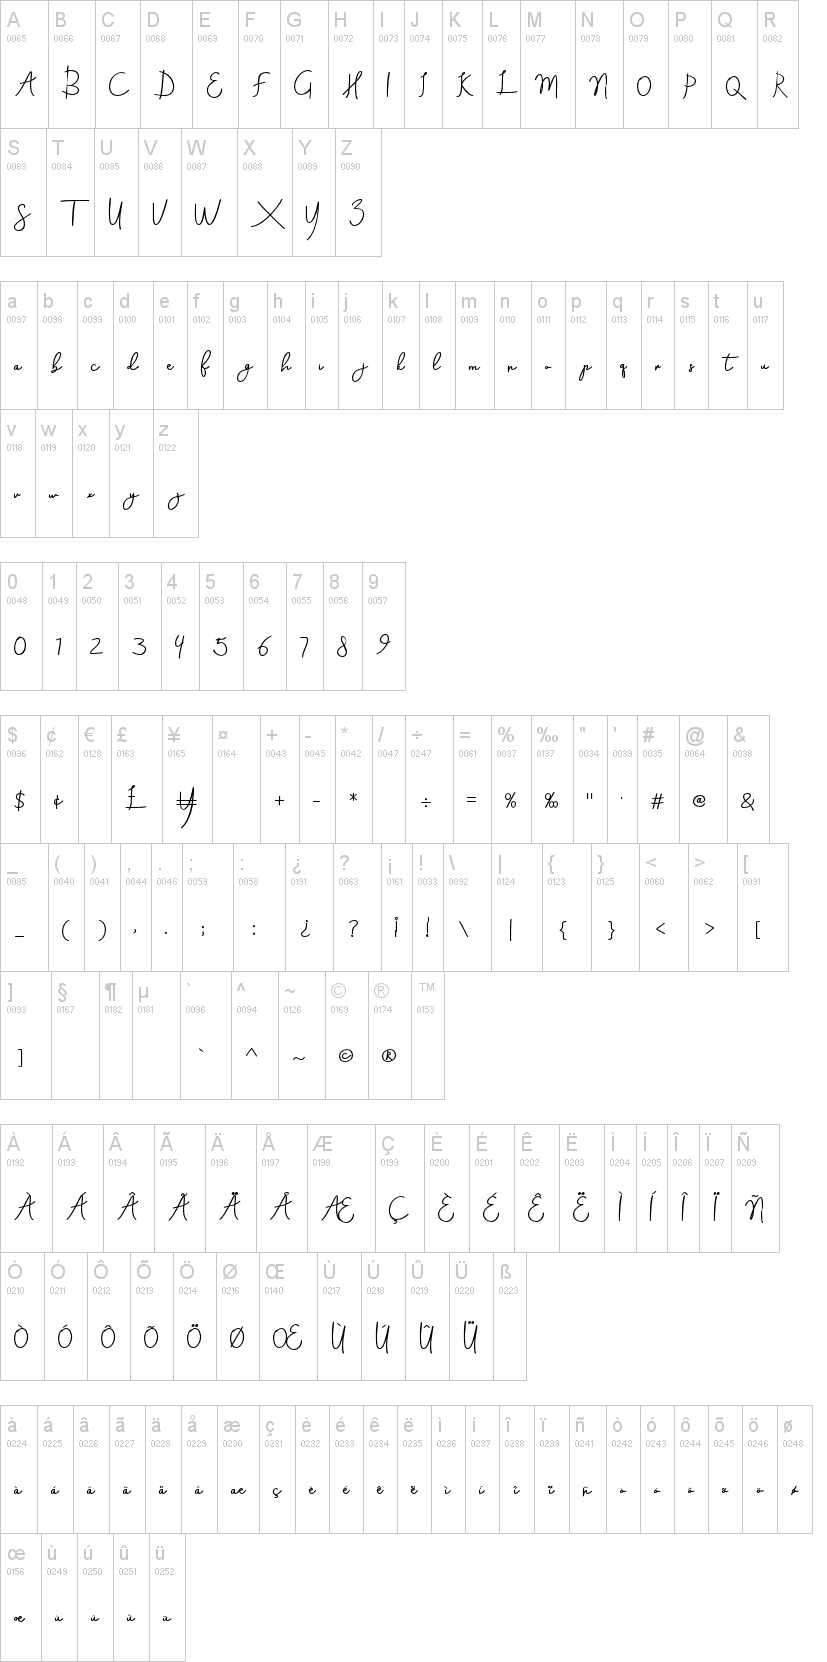 Aneisha Script